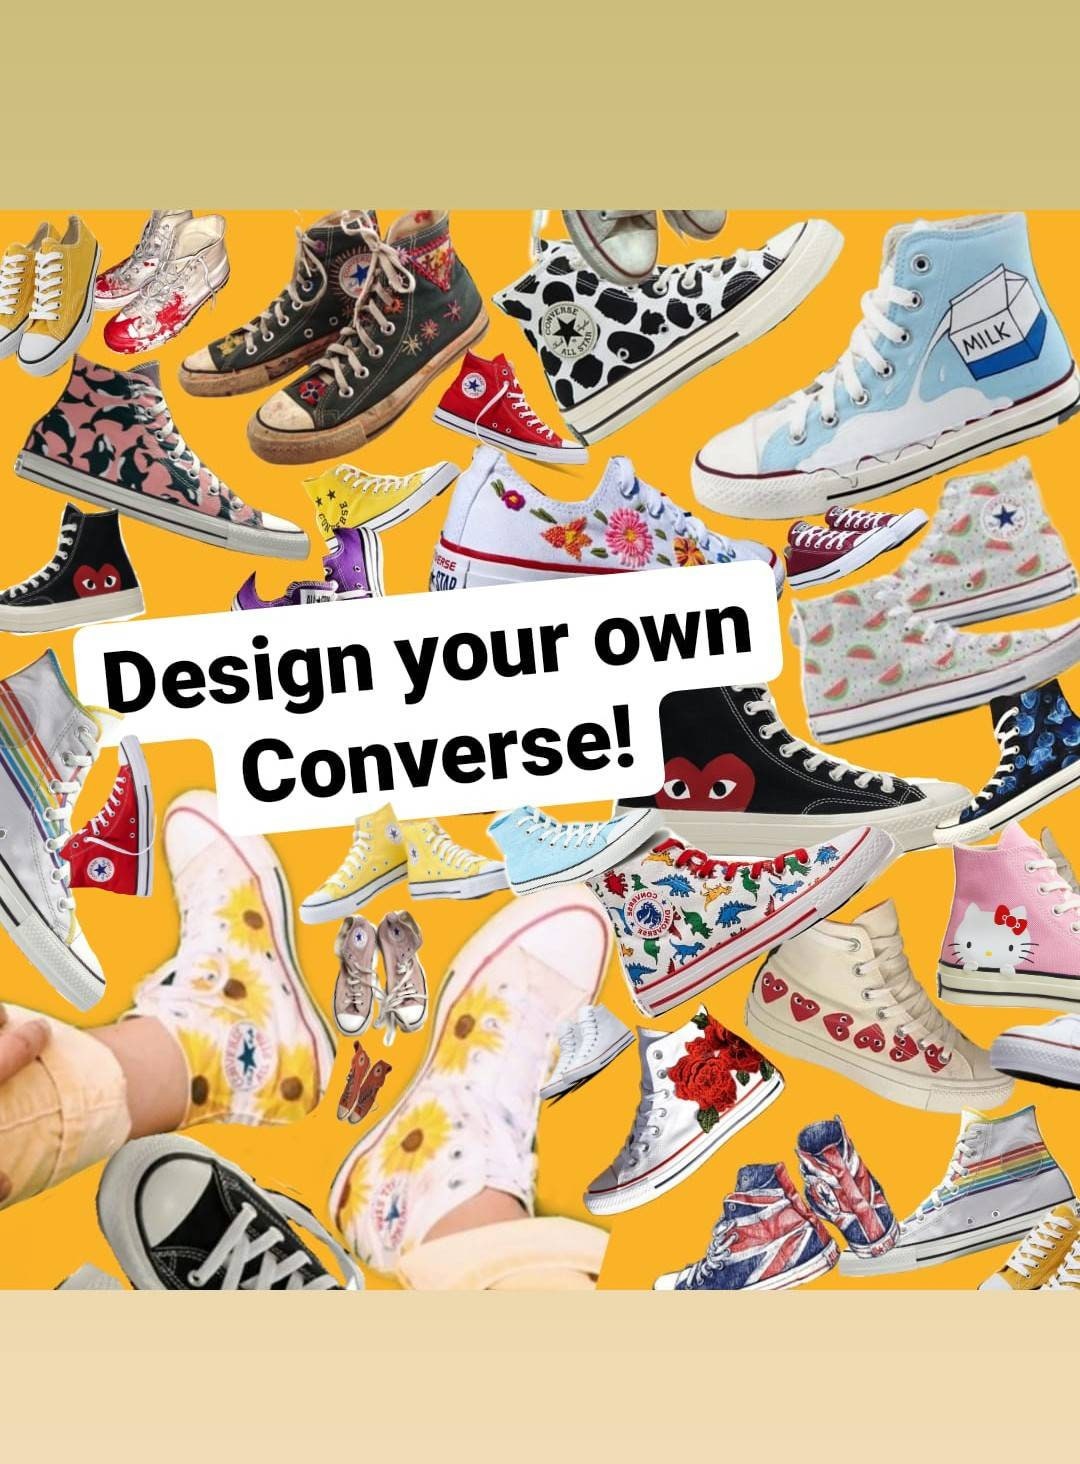 Følsom udgør Overgivelse Design Your Converse - Etsy